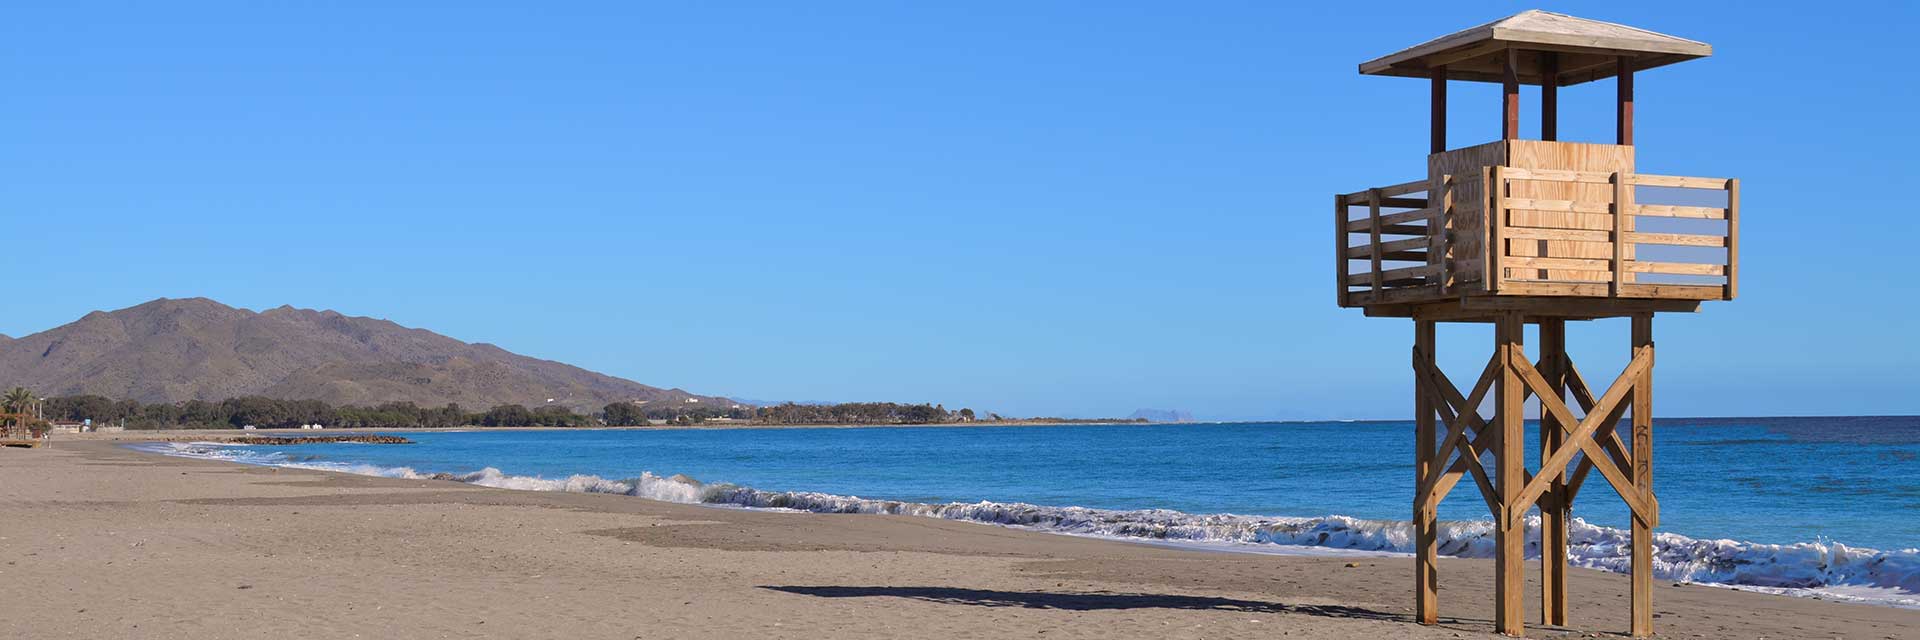 Playas de Vera ▶ Costa de Almería